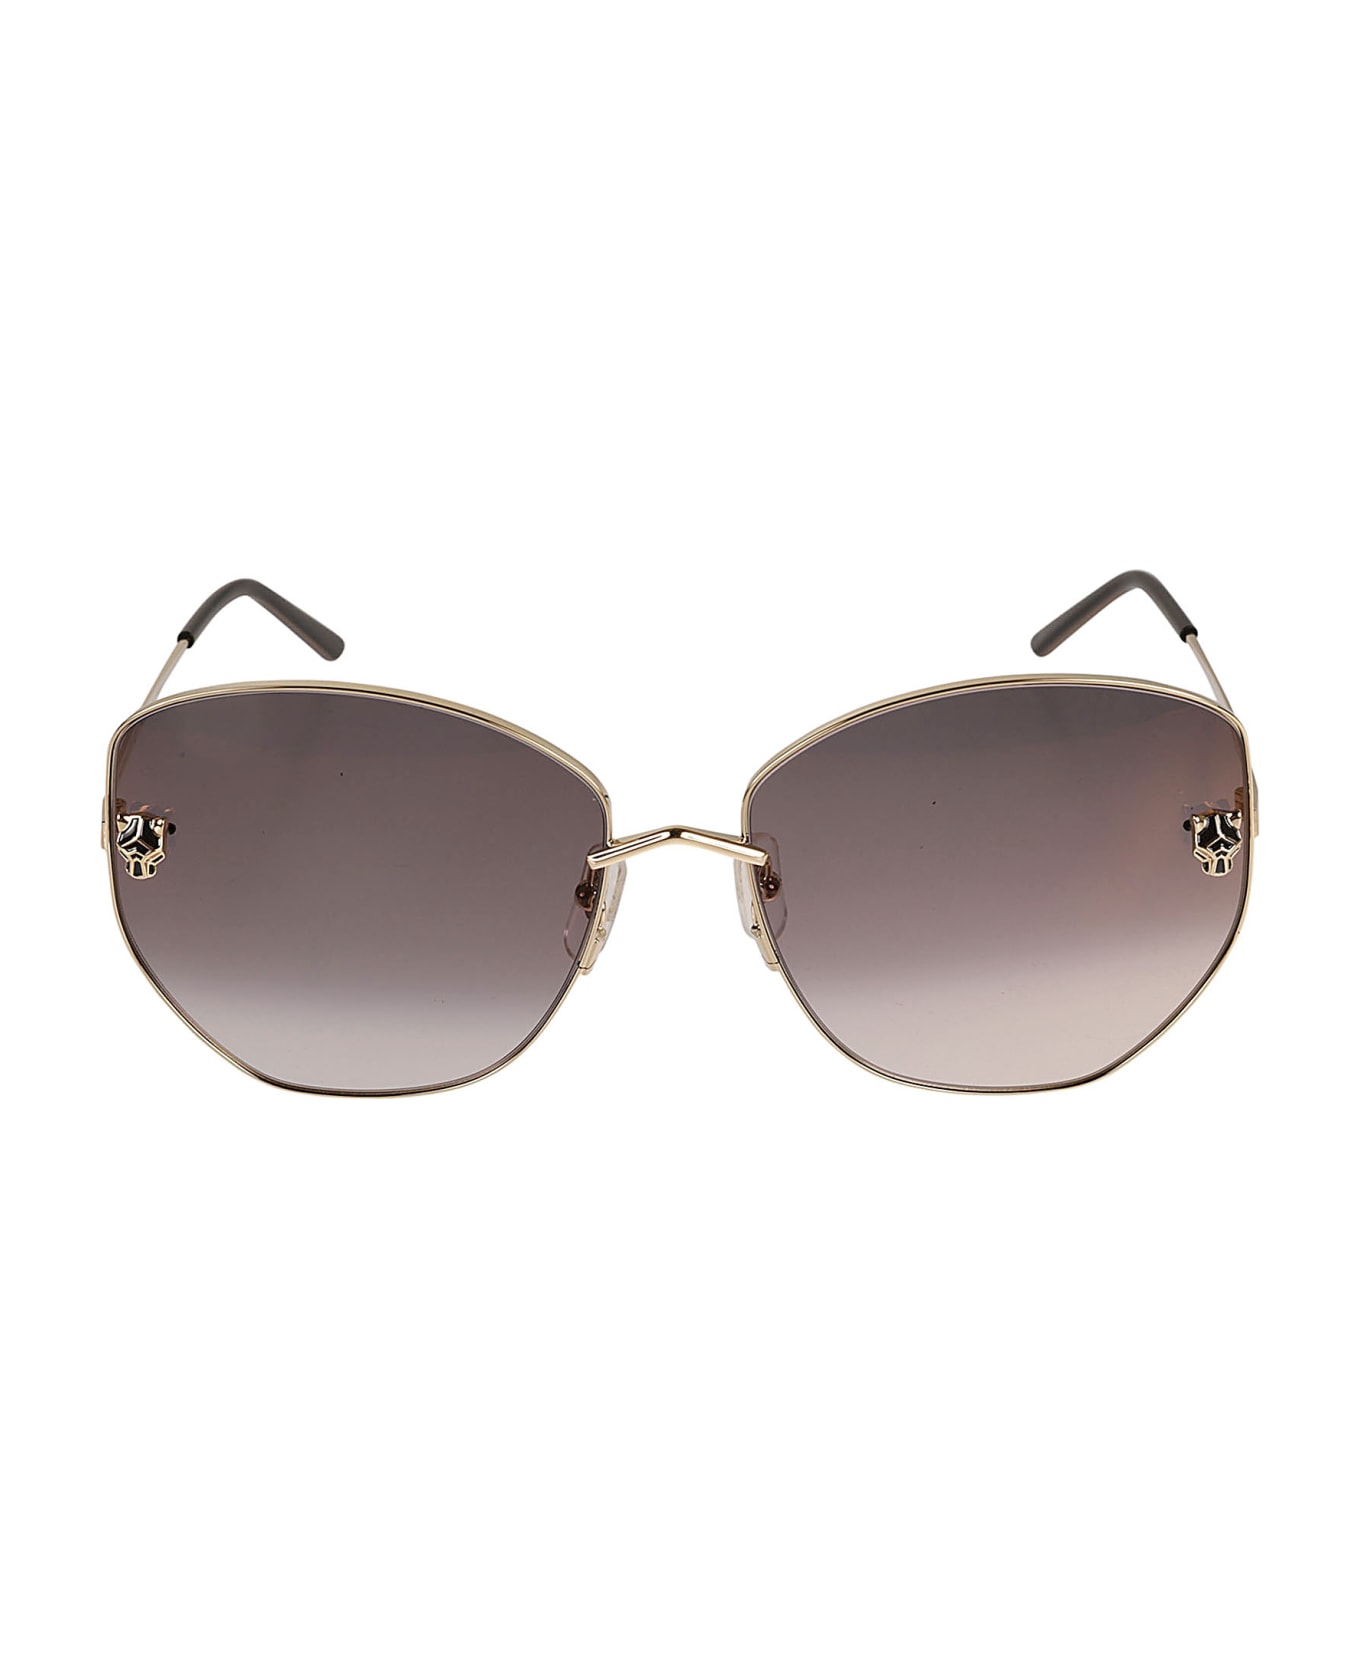 Cartier Eyewear Butterfly Sunglasses - 001 gold gold grey